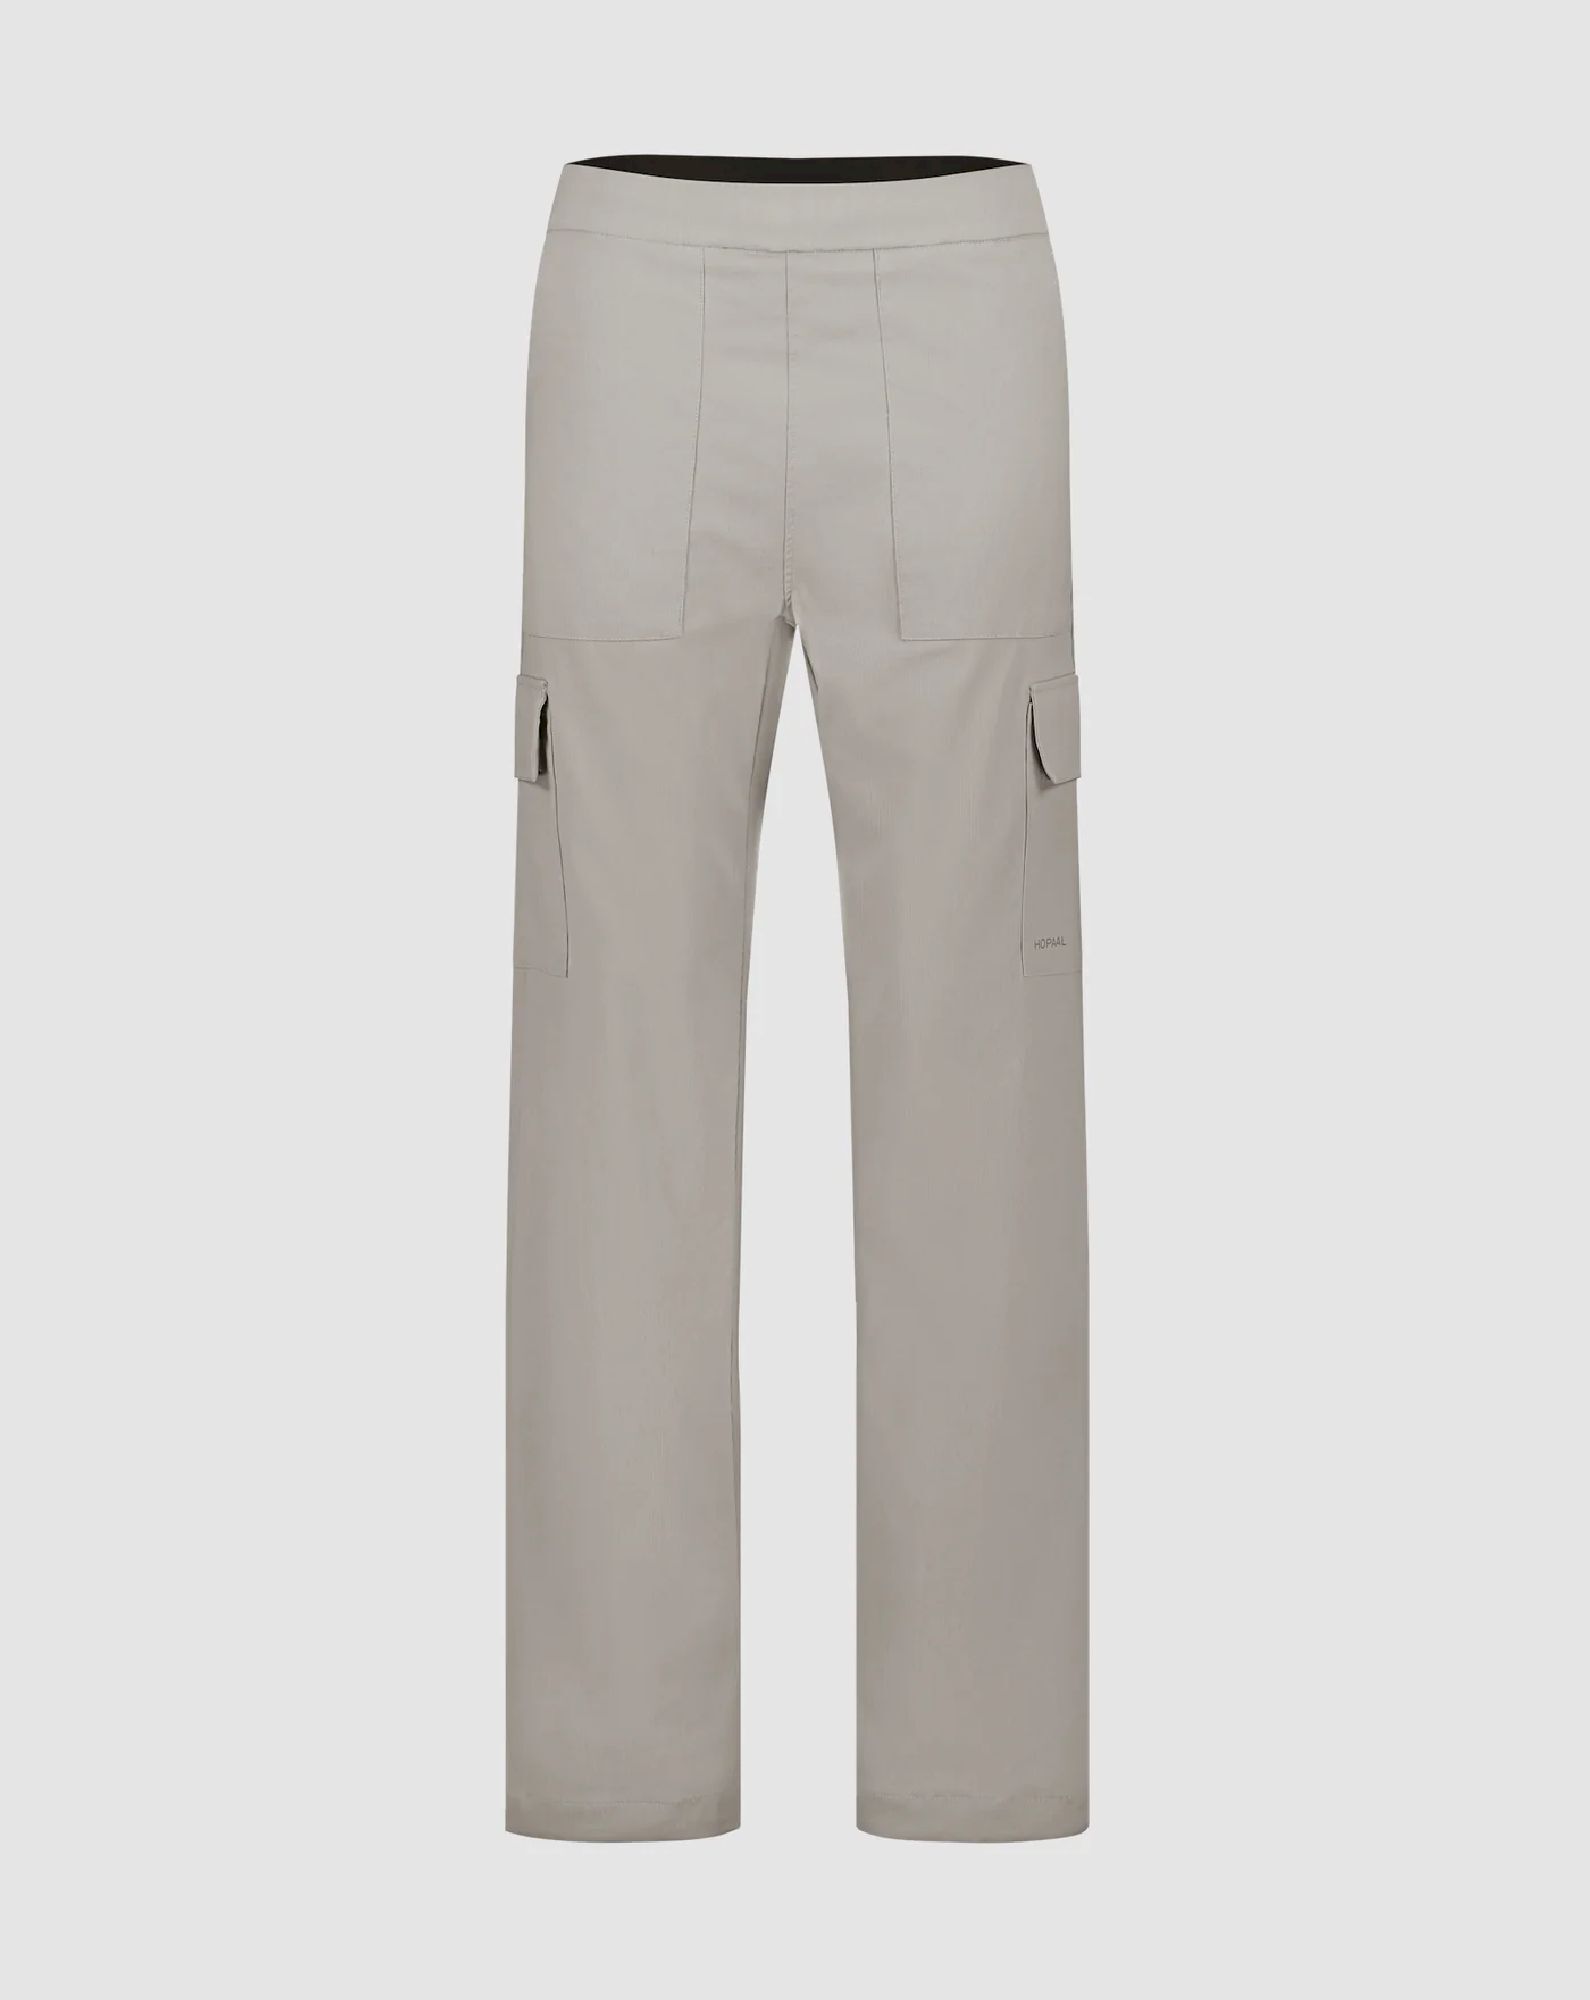 Hopaal Pantalon Multi-Activités - Spodnie turystyczne damskie | Hardloop